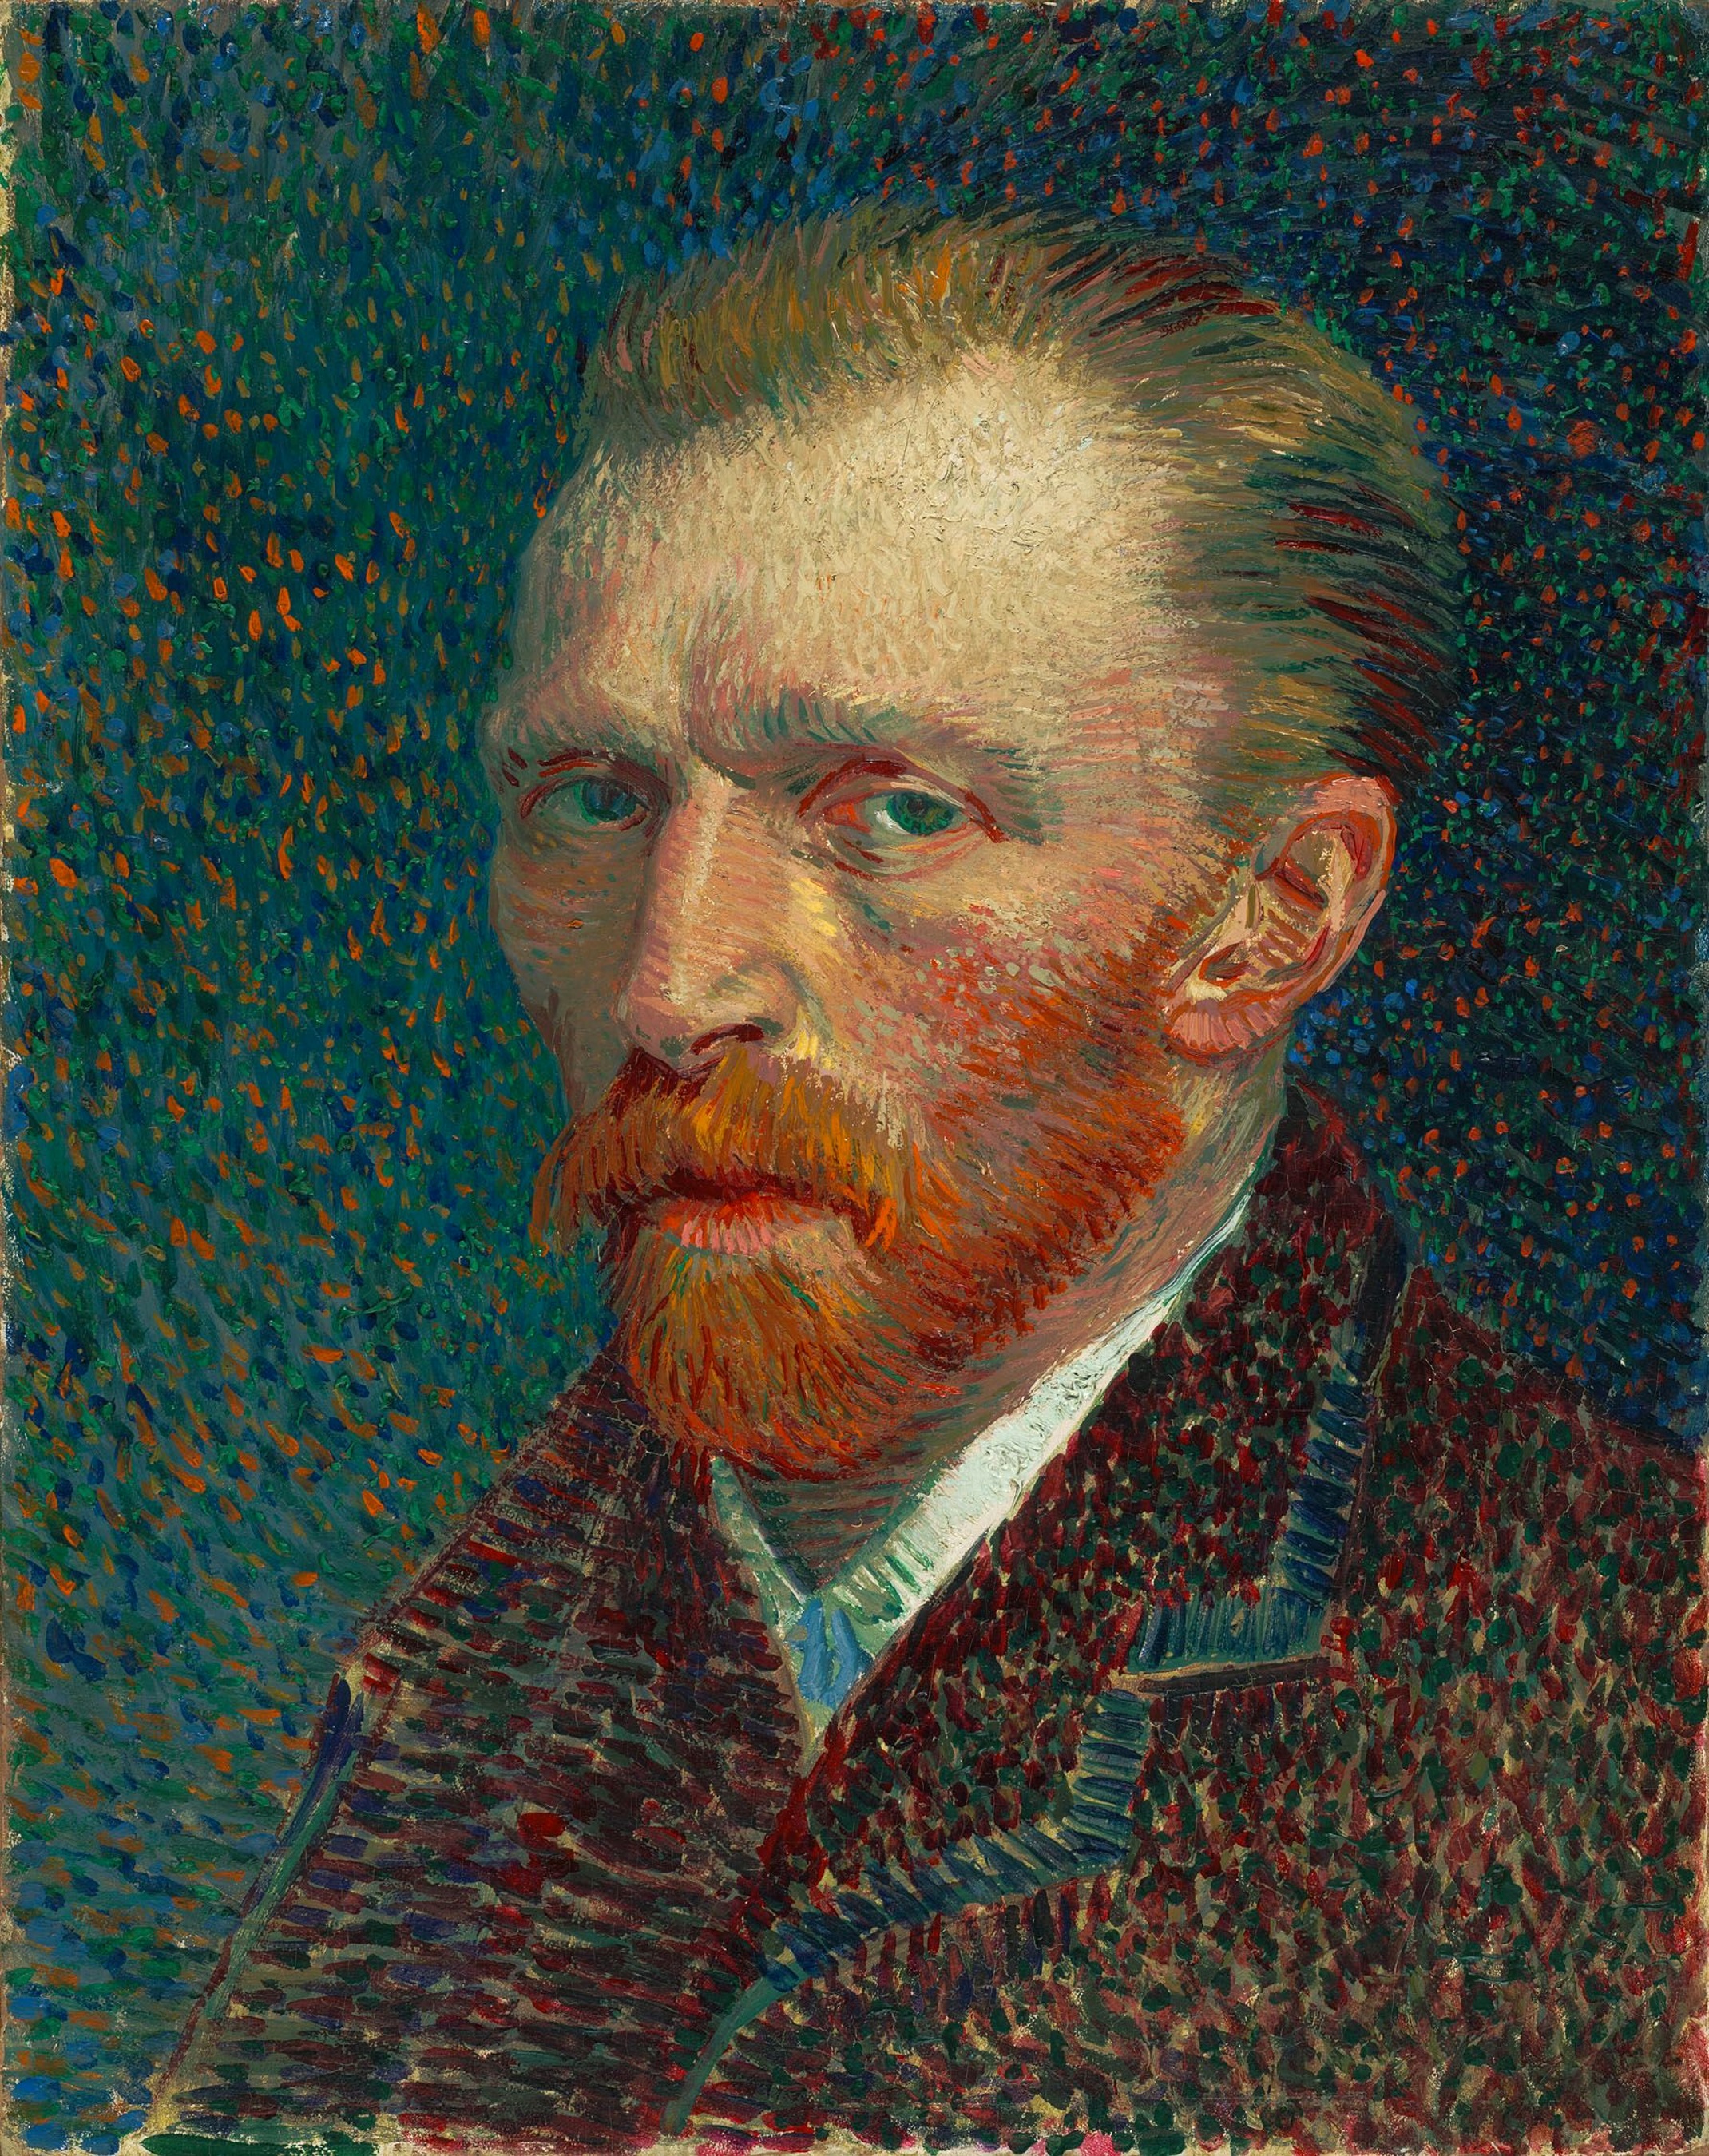 Vincent van Gogh, "Self Portrait" (1887)